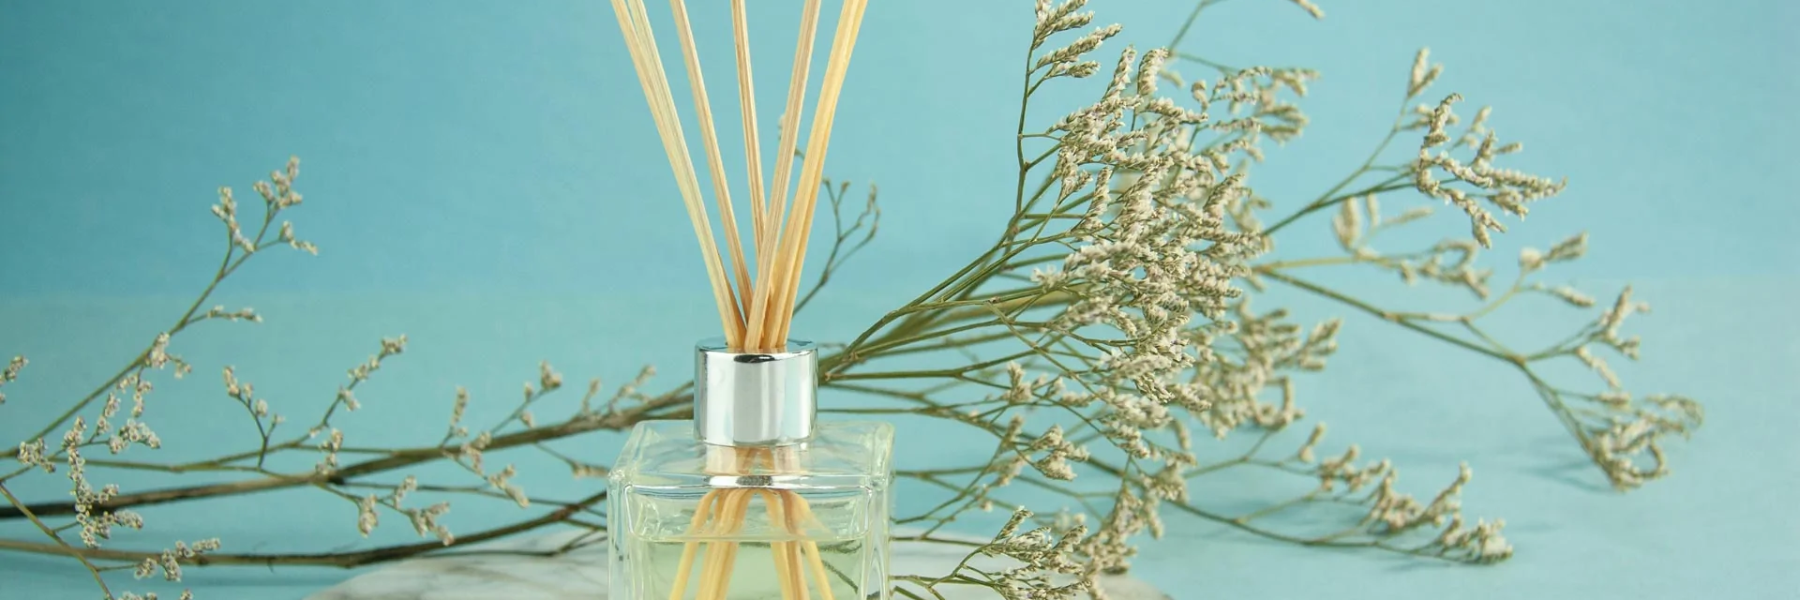 Difusor de aromas: Guía para escoger el tuyo Parte 2